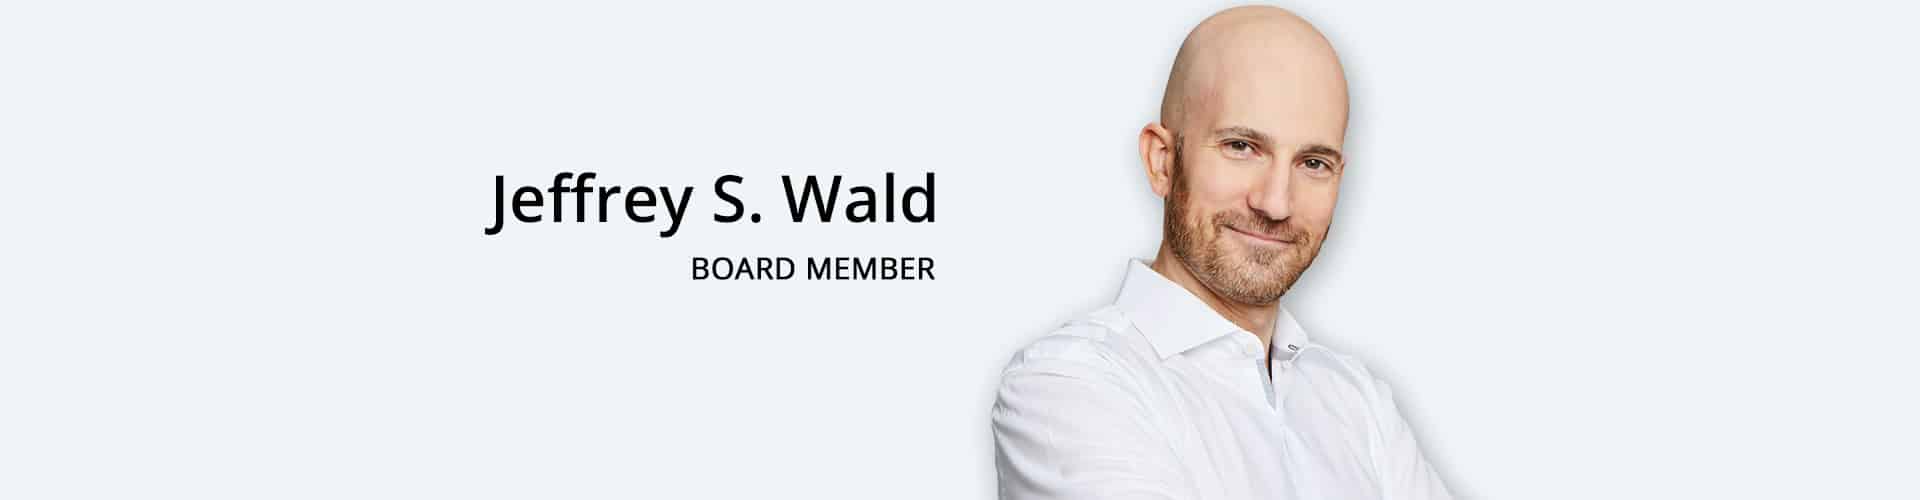 Jeffrey S. Wald-Board Member